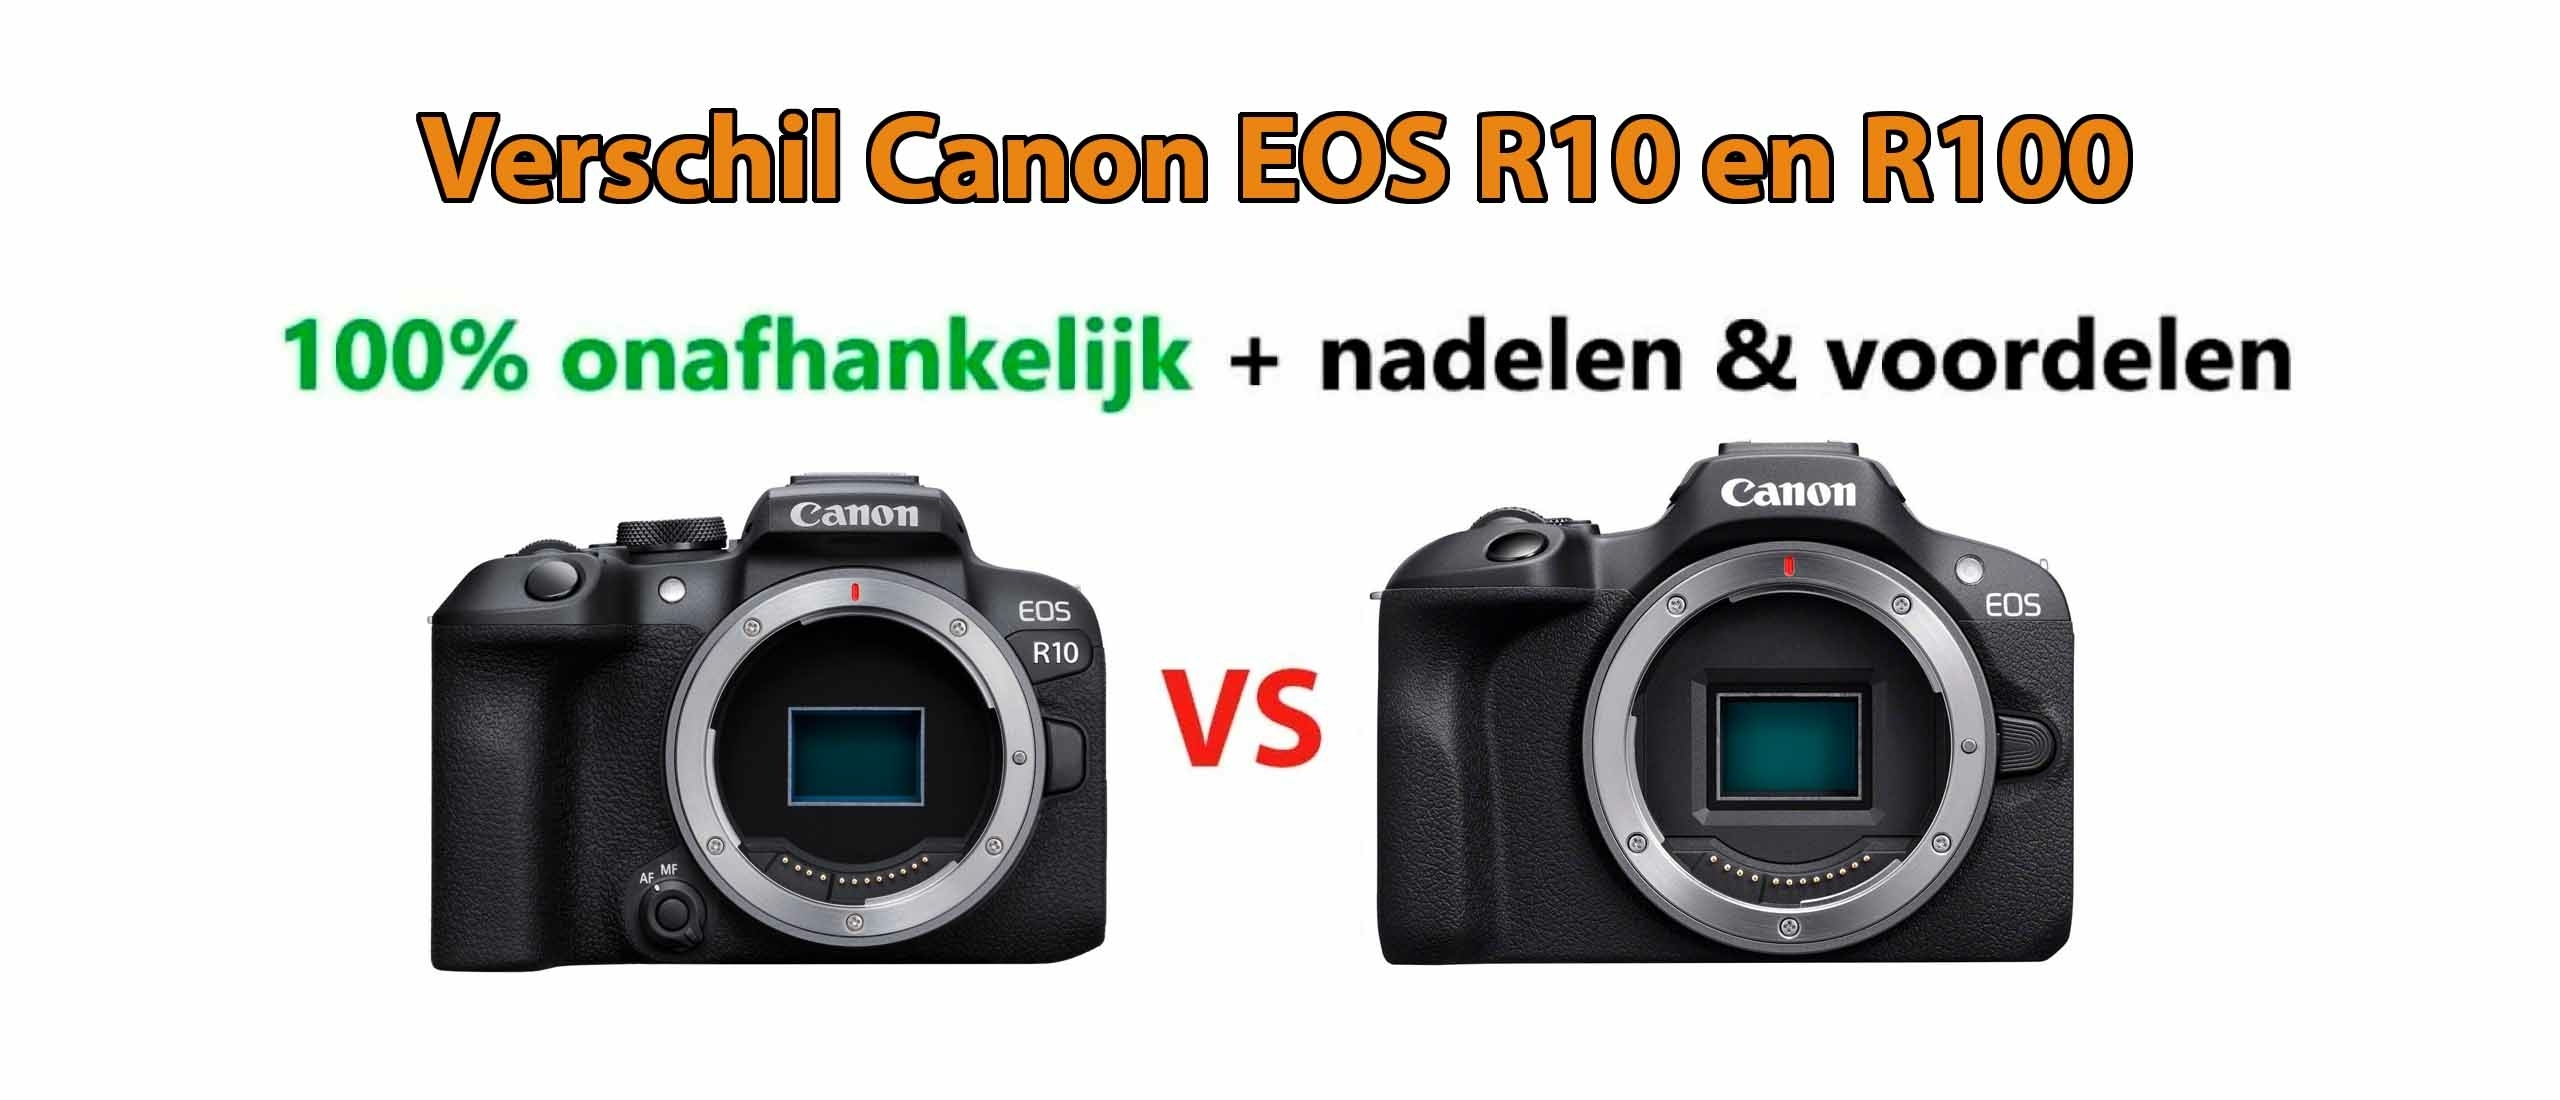 Verschil Canon EOS R10 en R100 systeemcamera